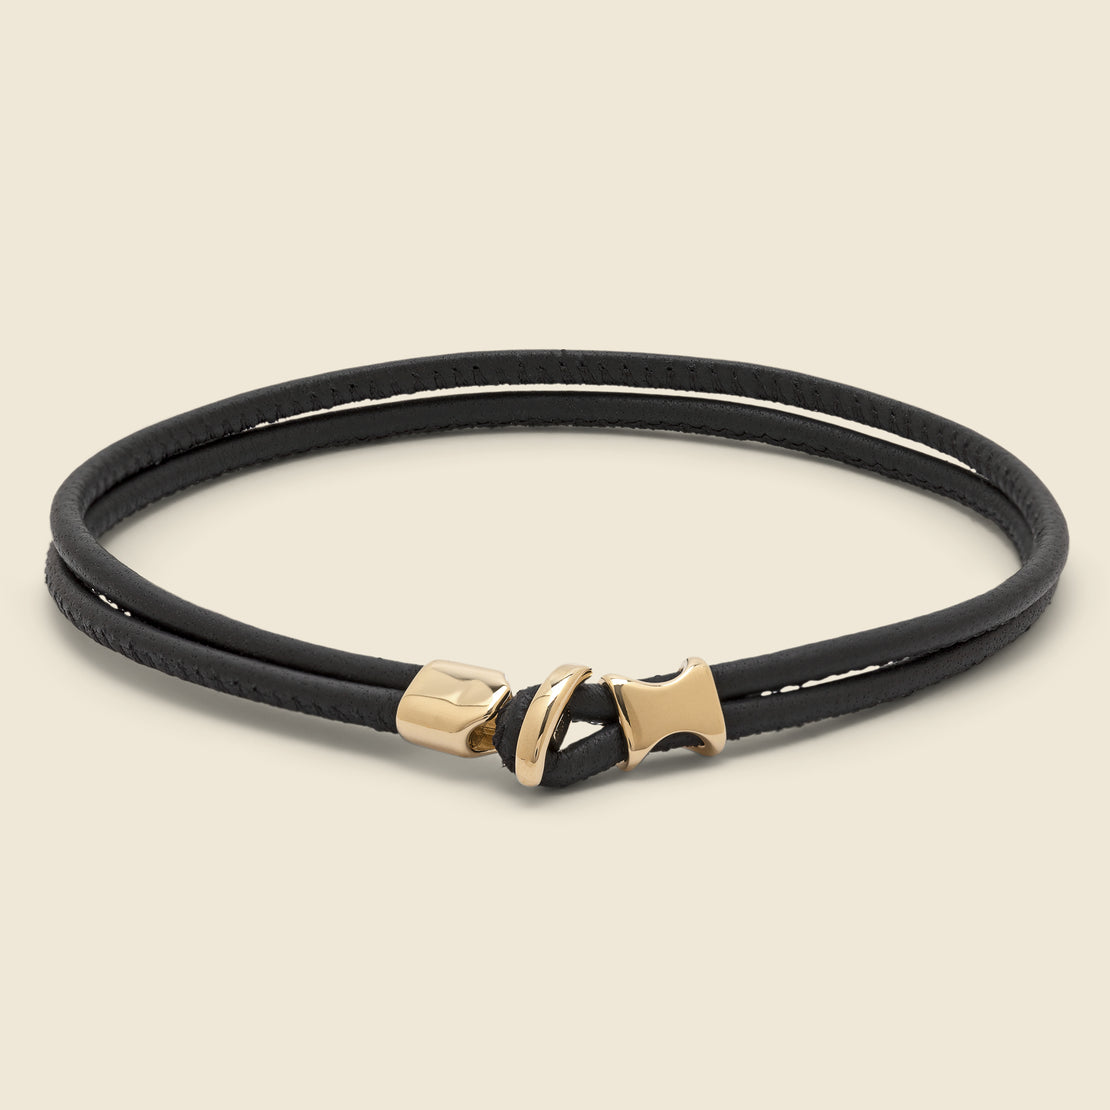 Miansai Orson Loop Leather Bracelet - Gold Vermeil/Black